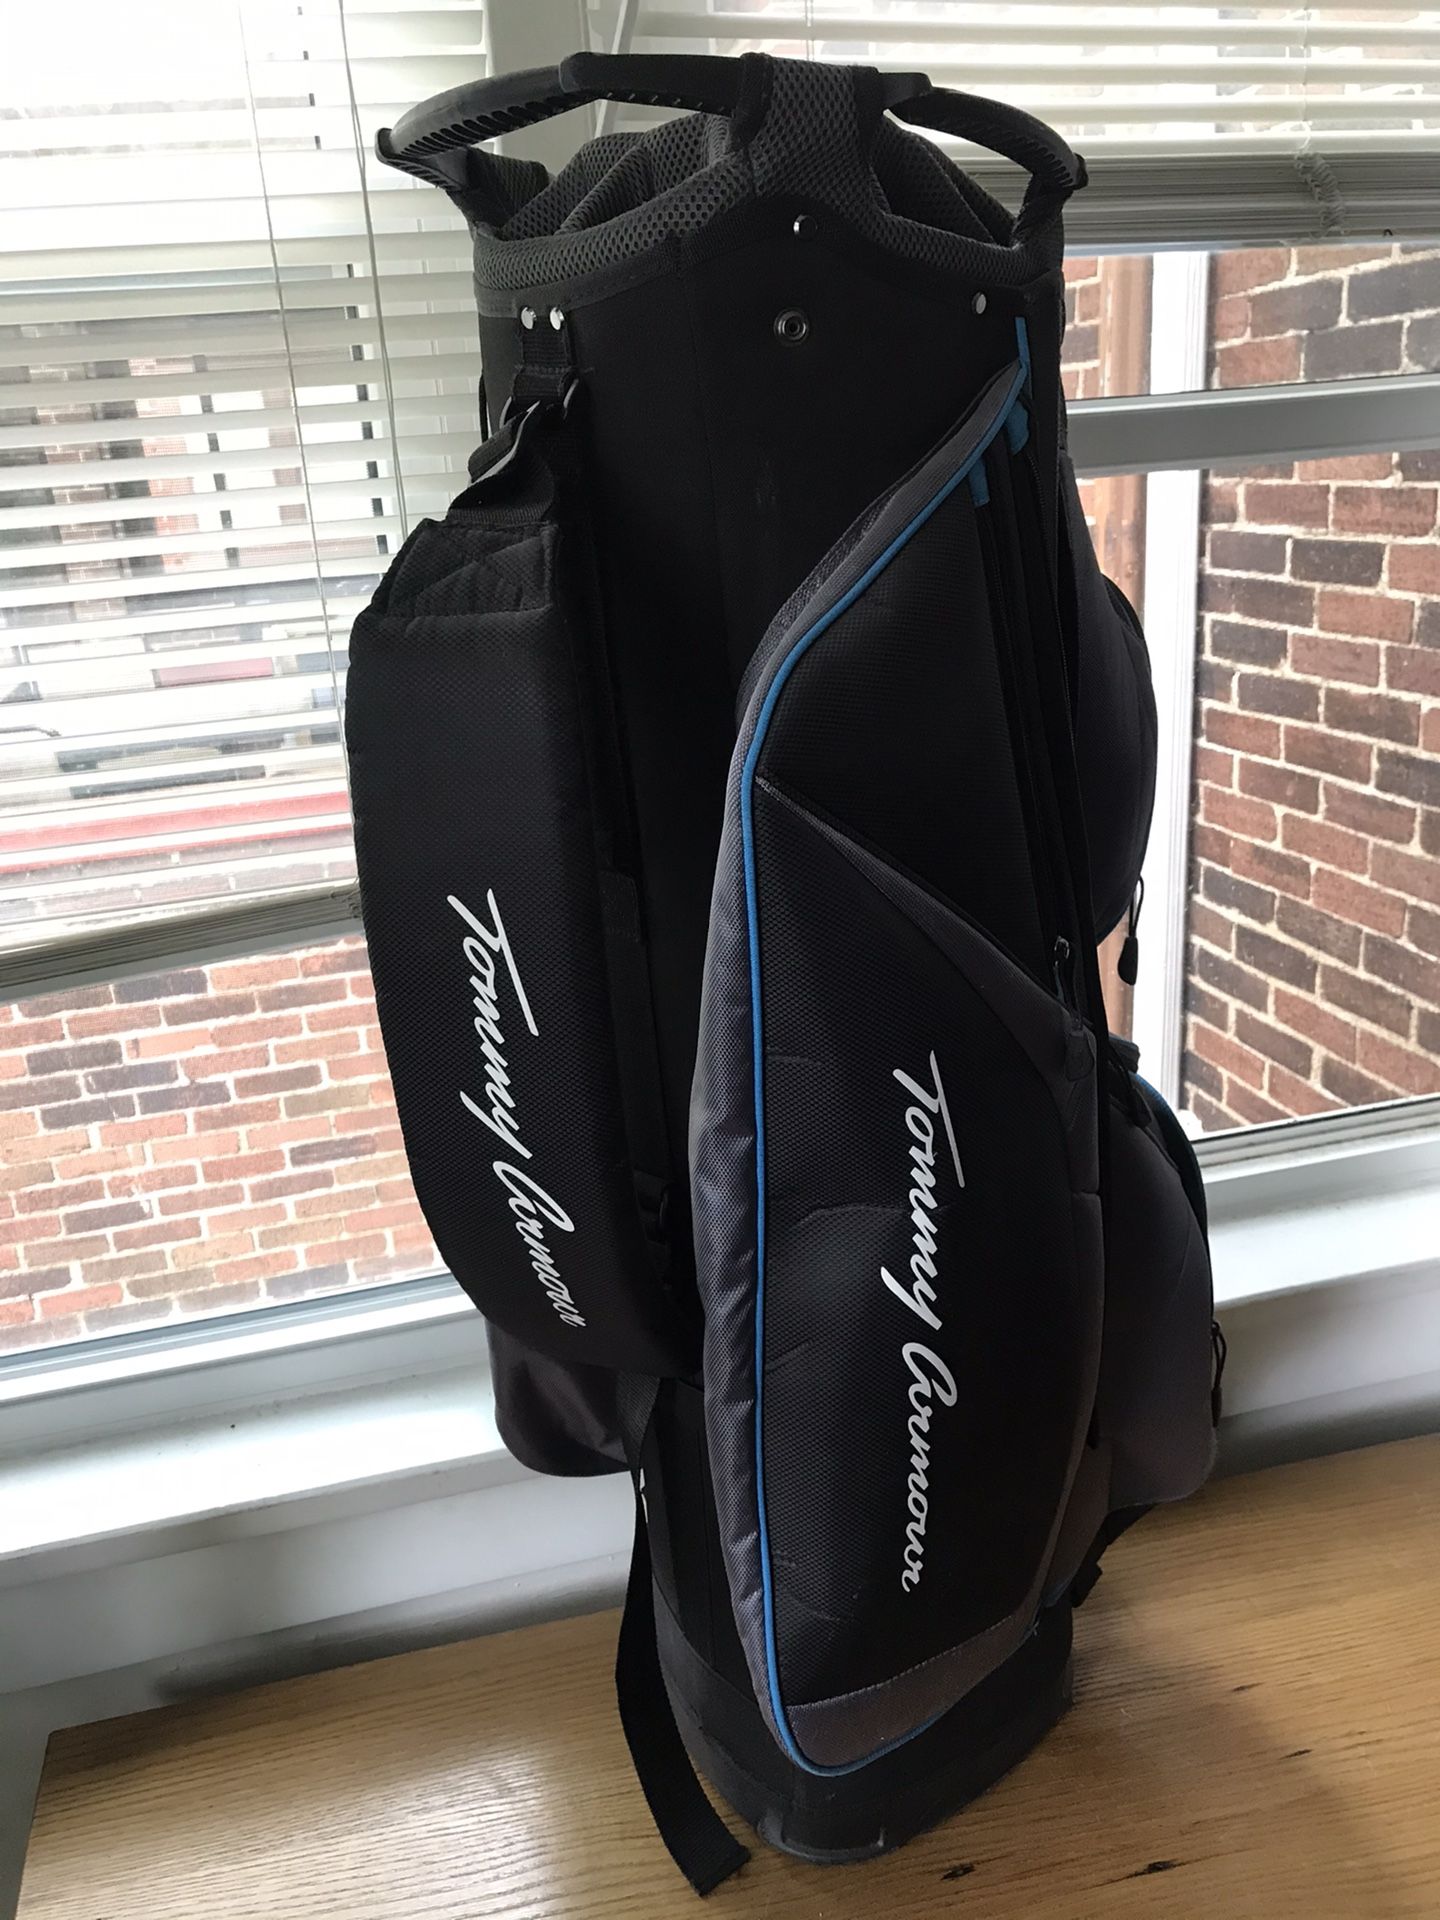 Tommy Armour Golf Bag